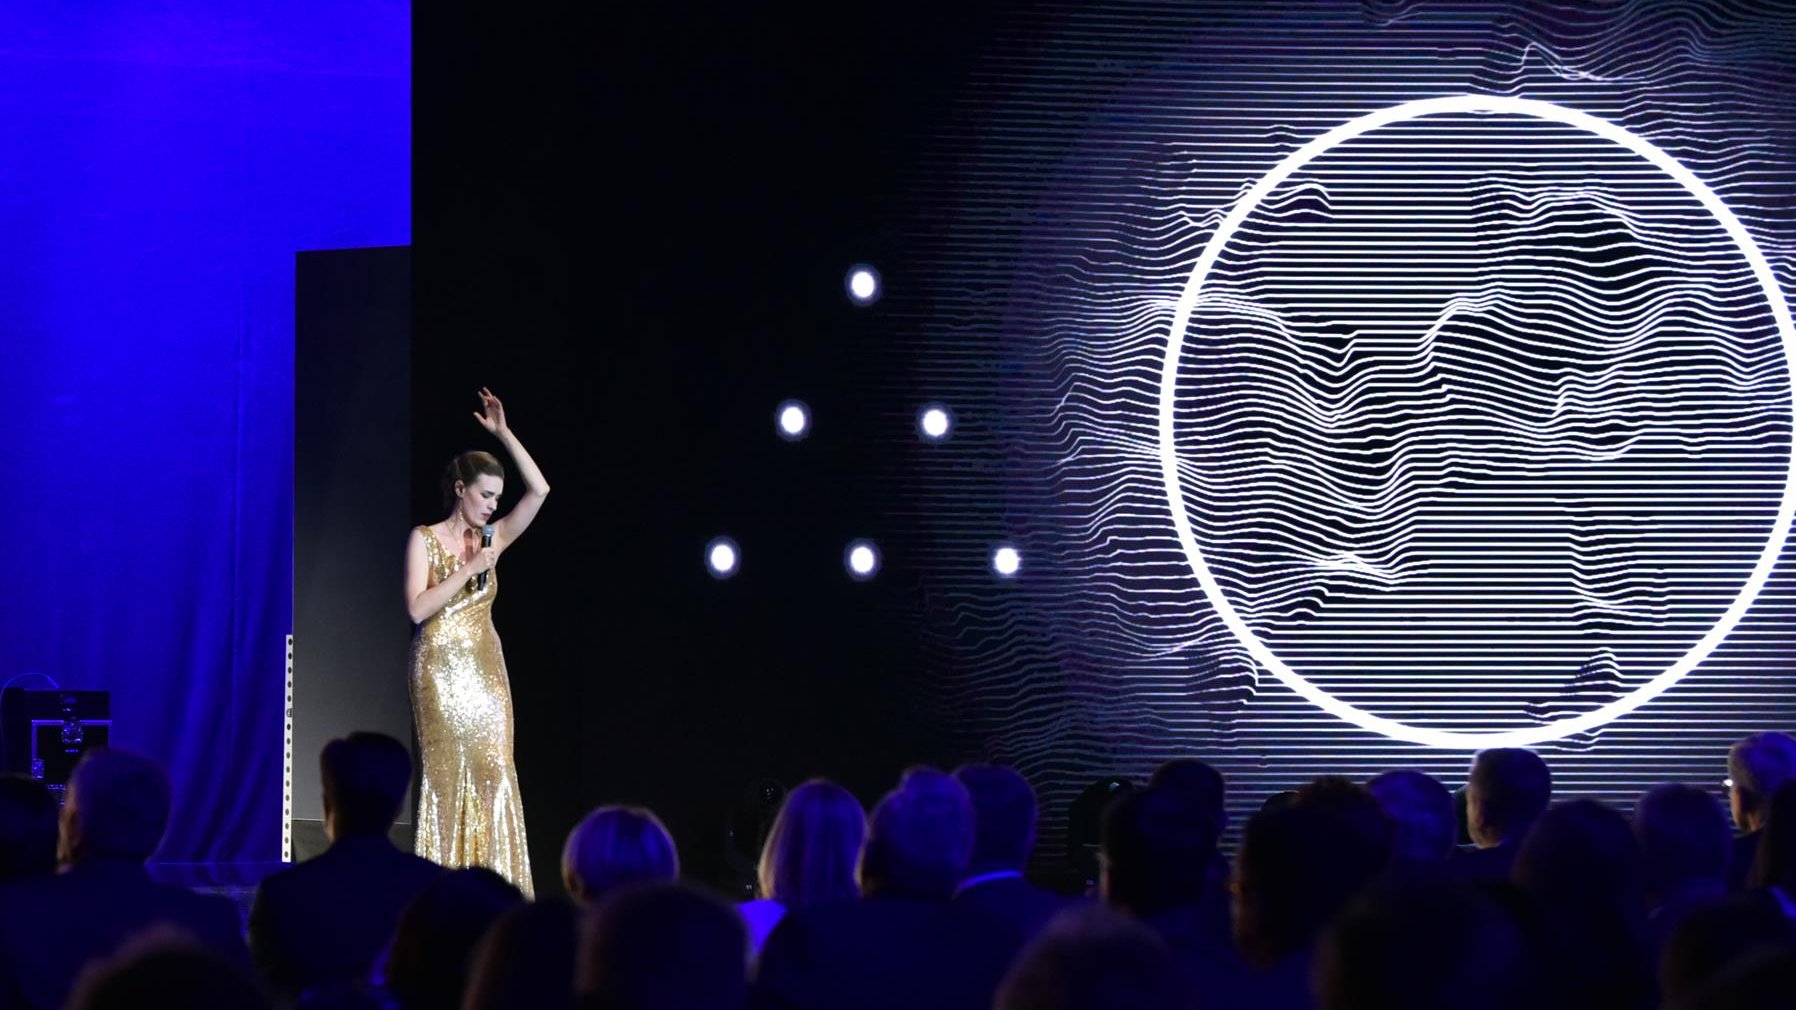 Na zdjęciu śpiewająca kobieta w złotej sukni, obok, na ekranie, widać wielkie koło